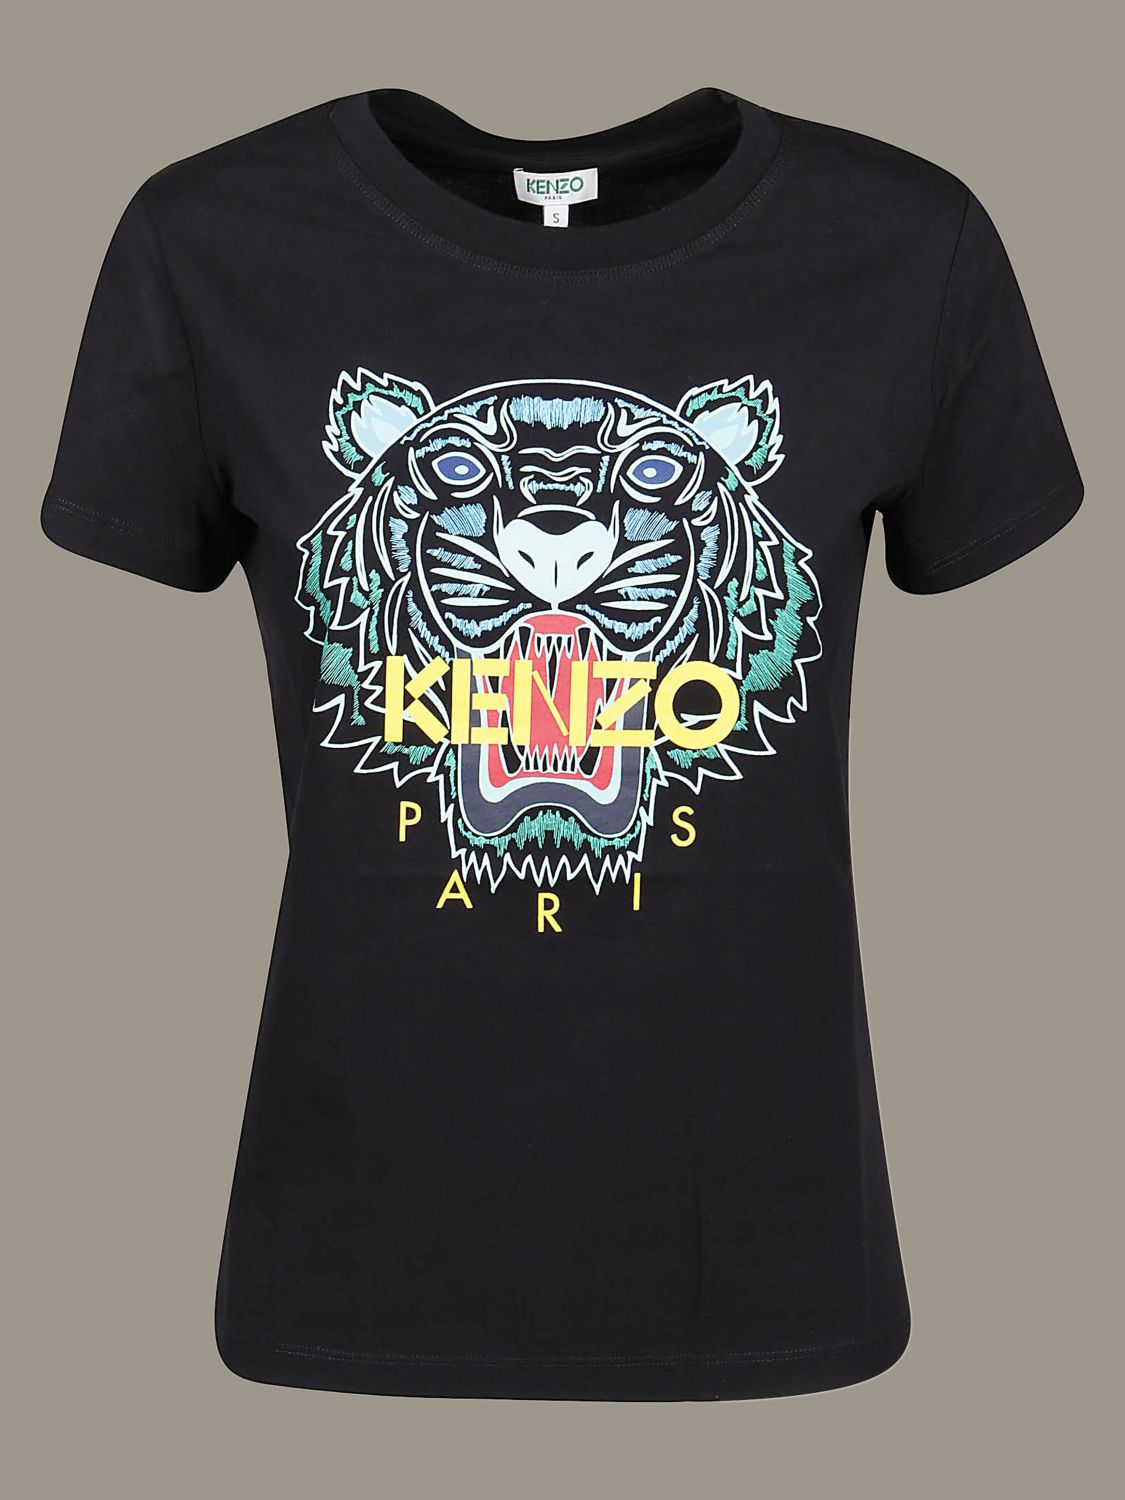 kenzo shirts women's